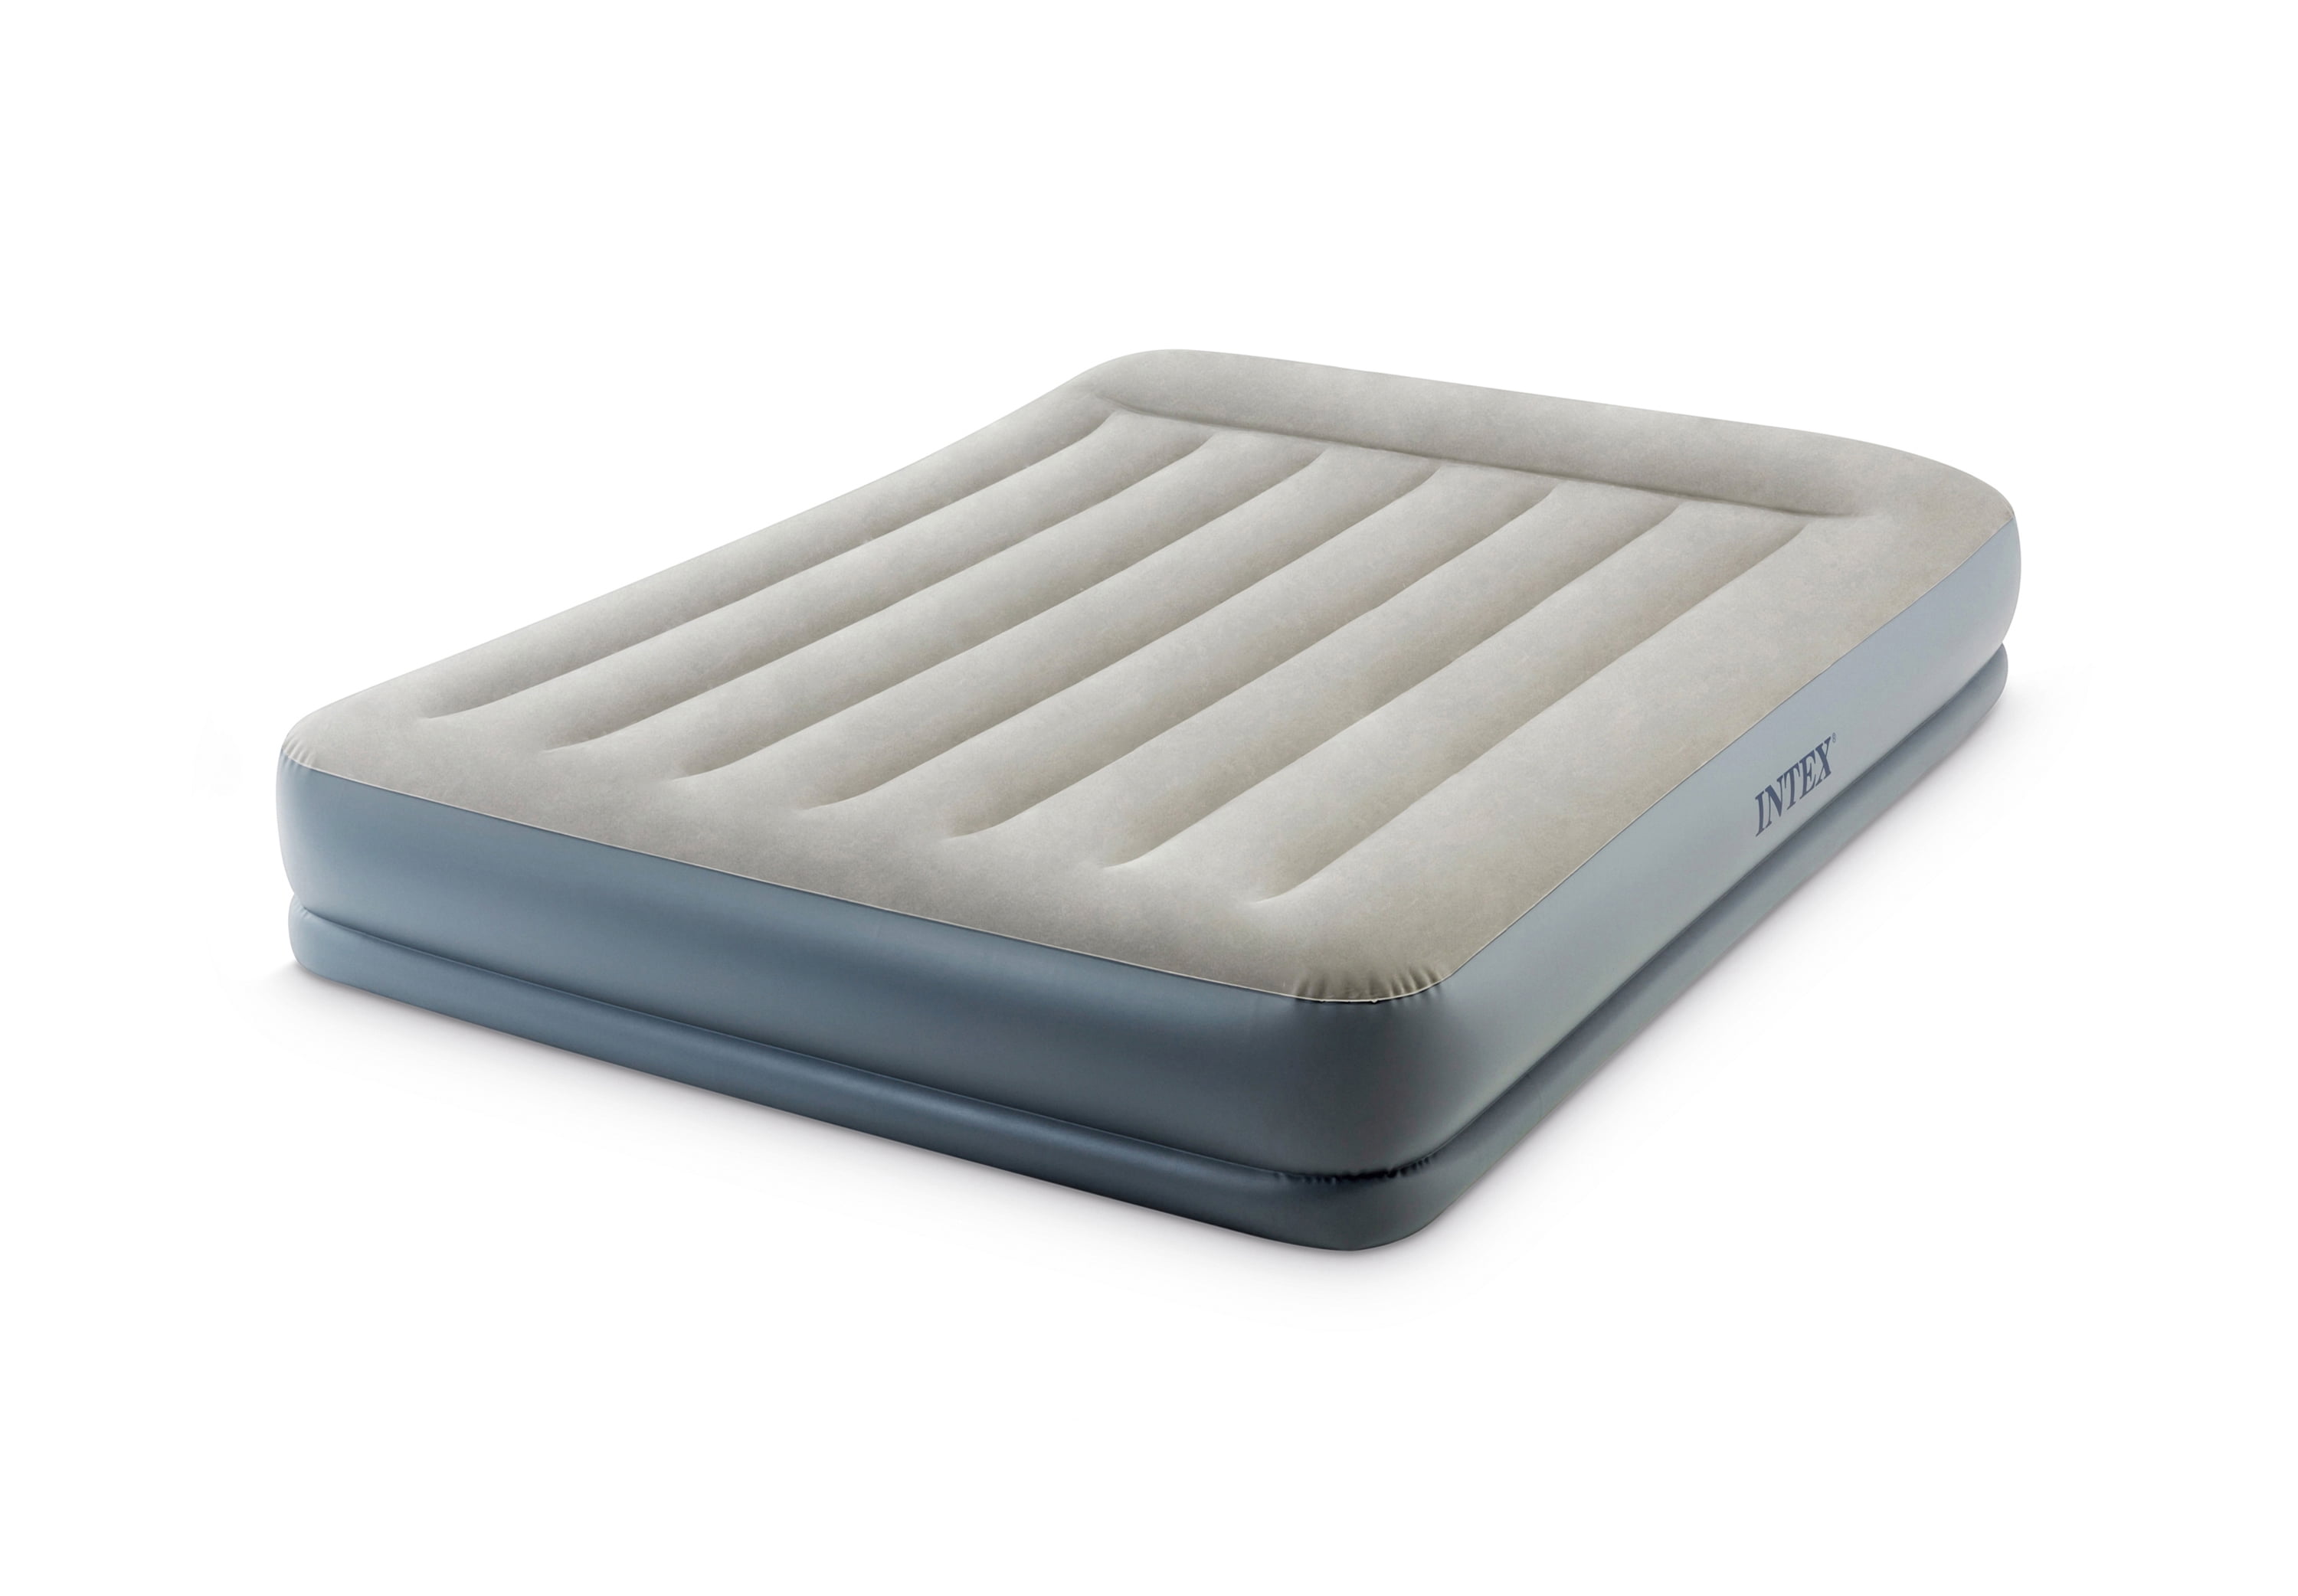 Intex Dura-Beam Pillow Rest Fiber Tech Air Mattress Bed w/ Built In Pump Queen 